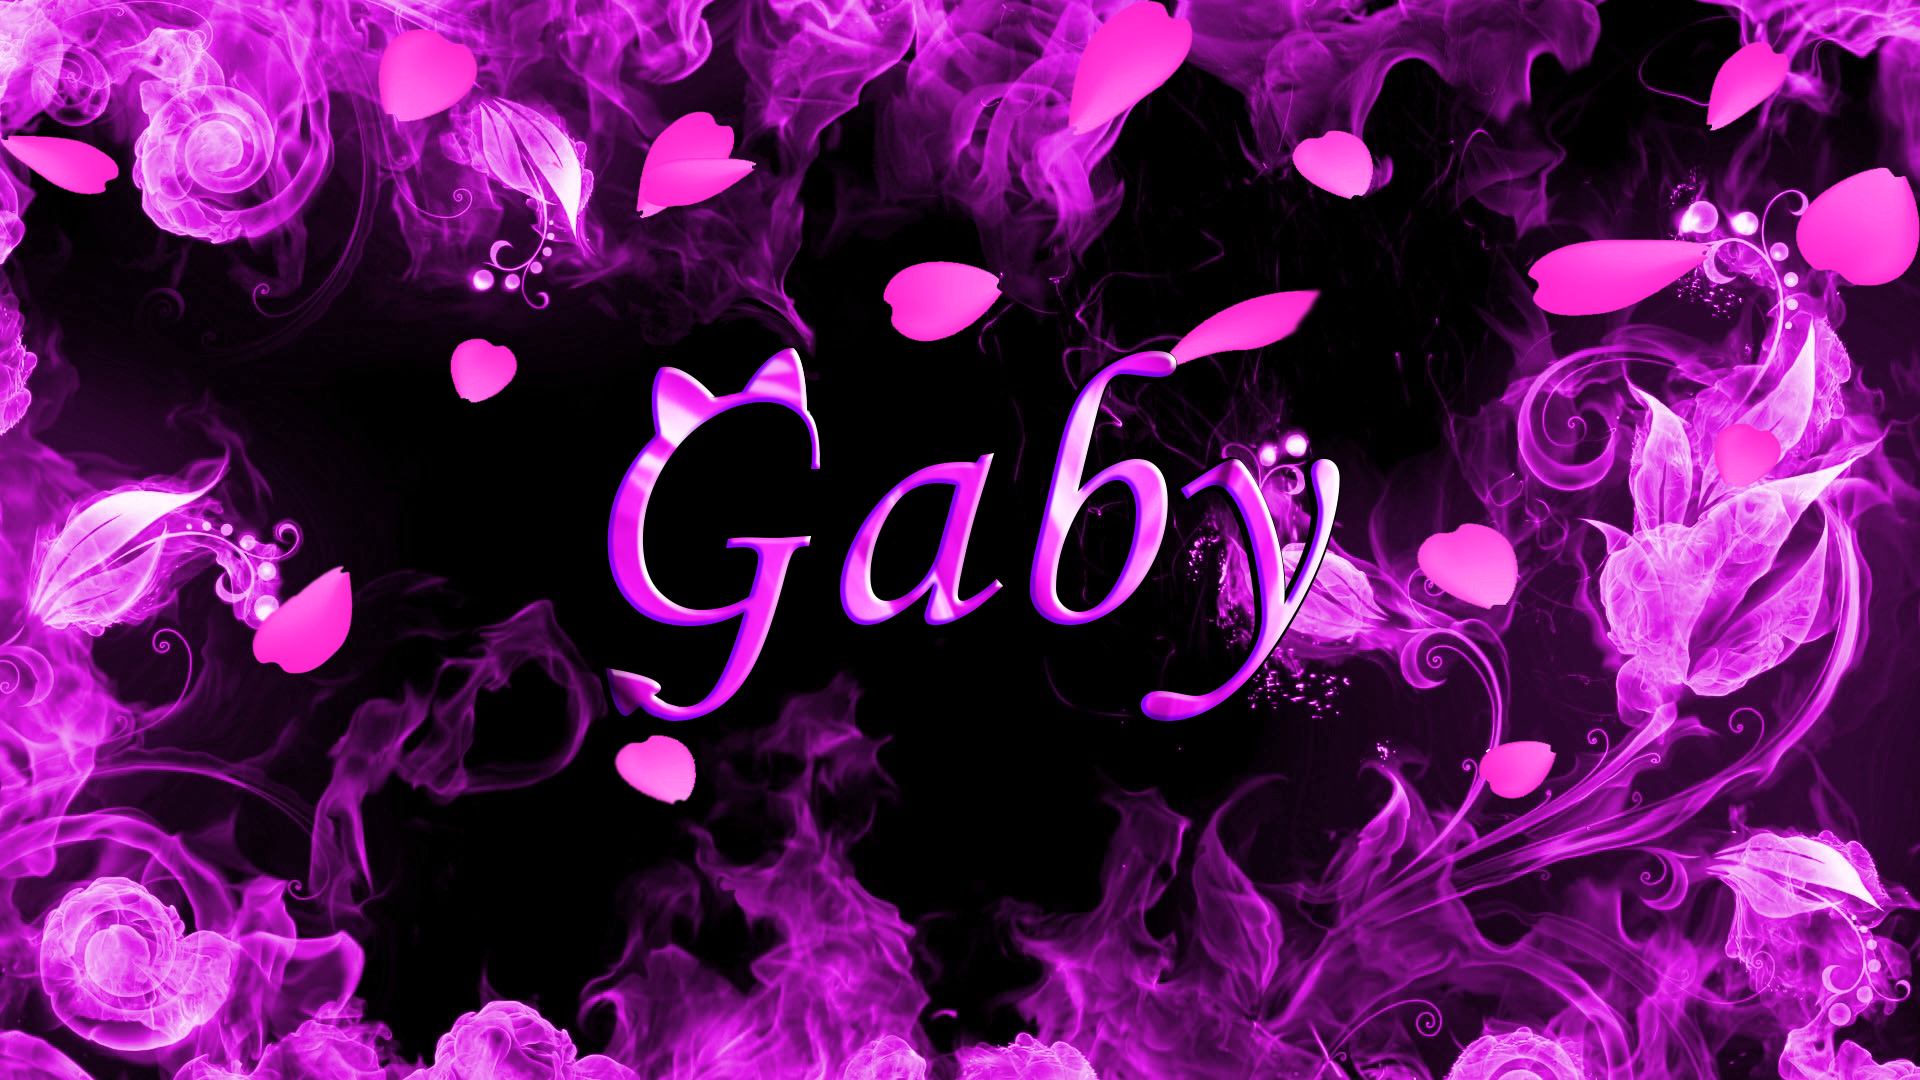 Gaby gatinha by felipepeixeboy